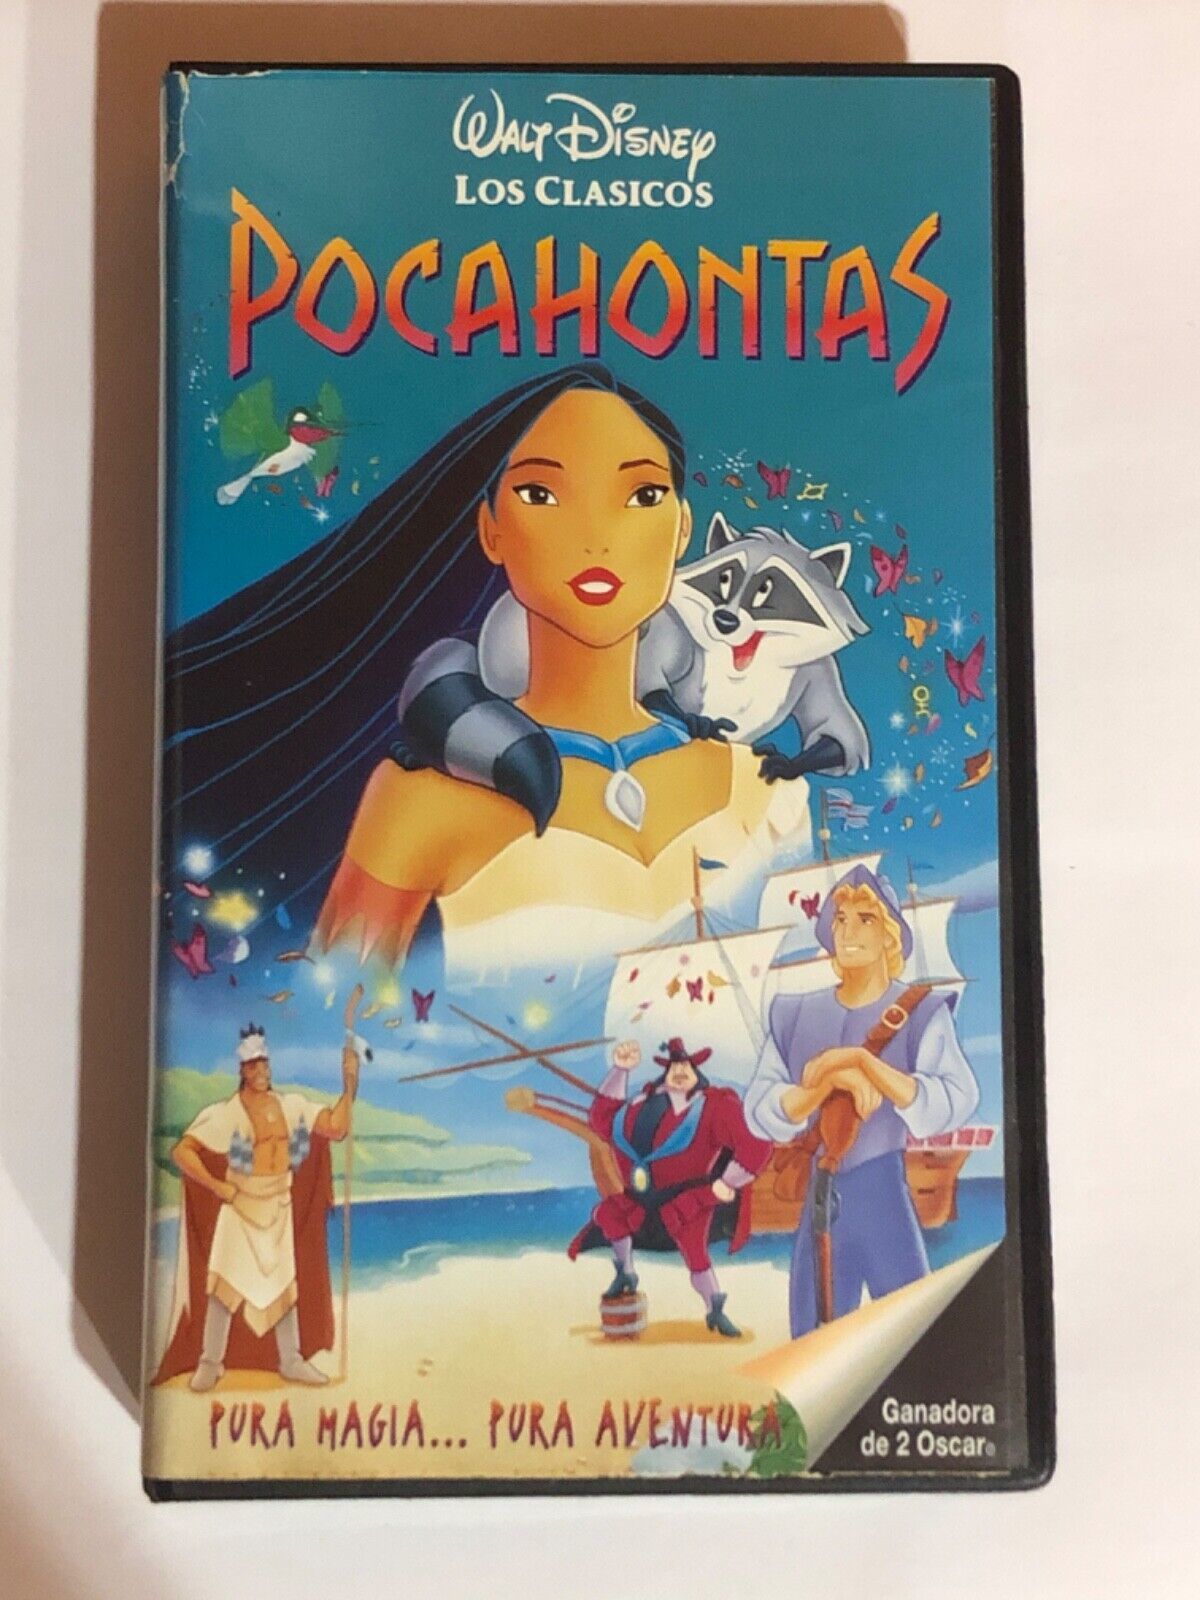 Primary image for Pocahontas vhs : Walt Disney/Pal/Español